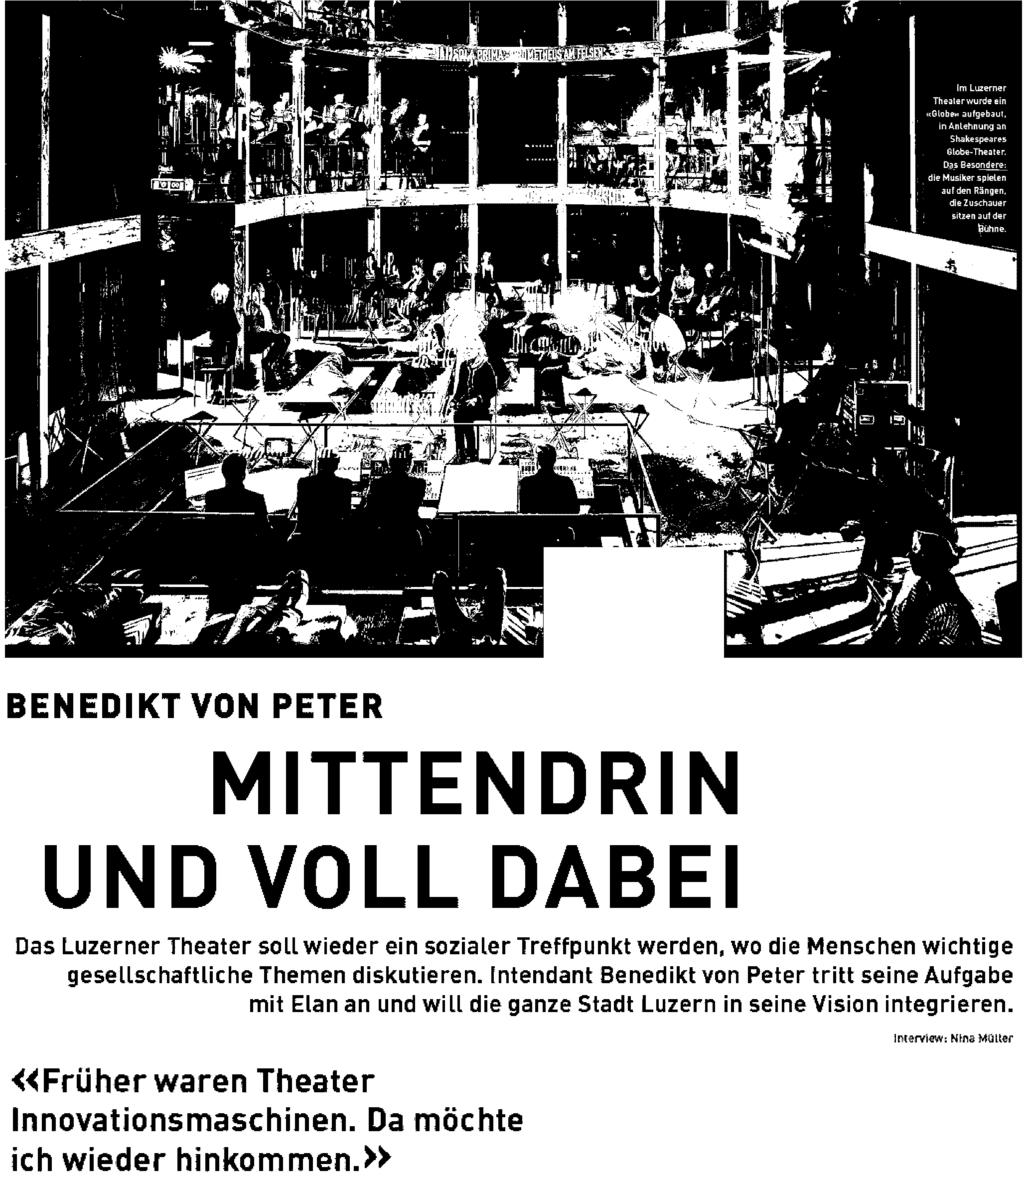 Event. / Im Lusernr Theater wurde eien Alobes aufgebaut, in Anlehnung an Shakespeares Globe-Theater.